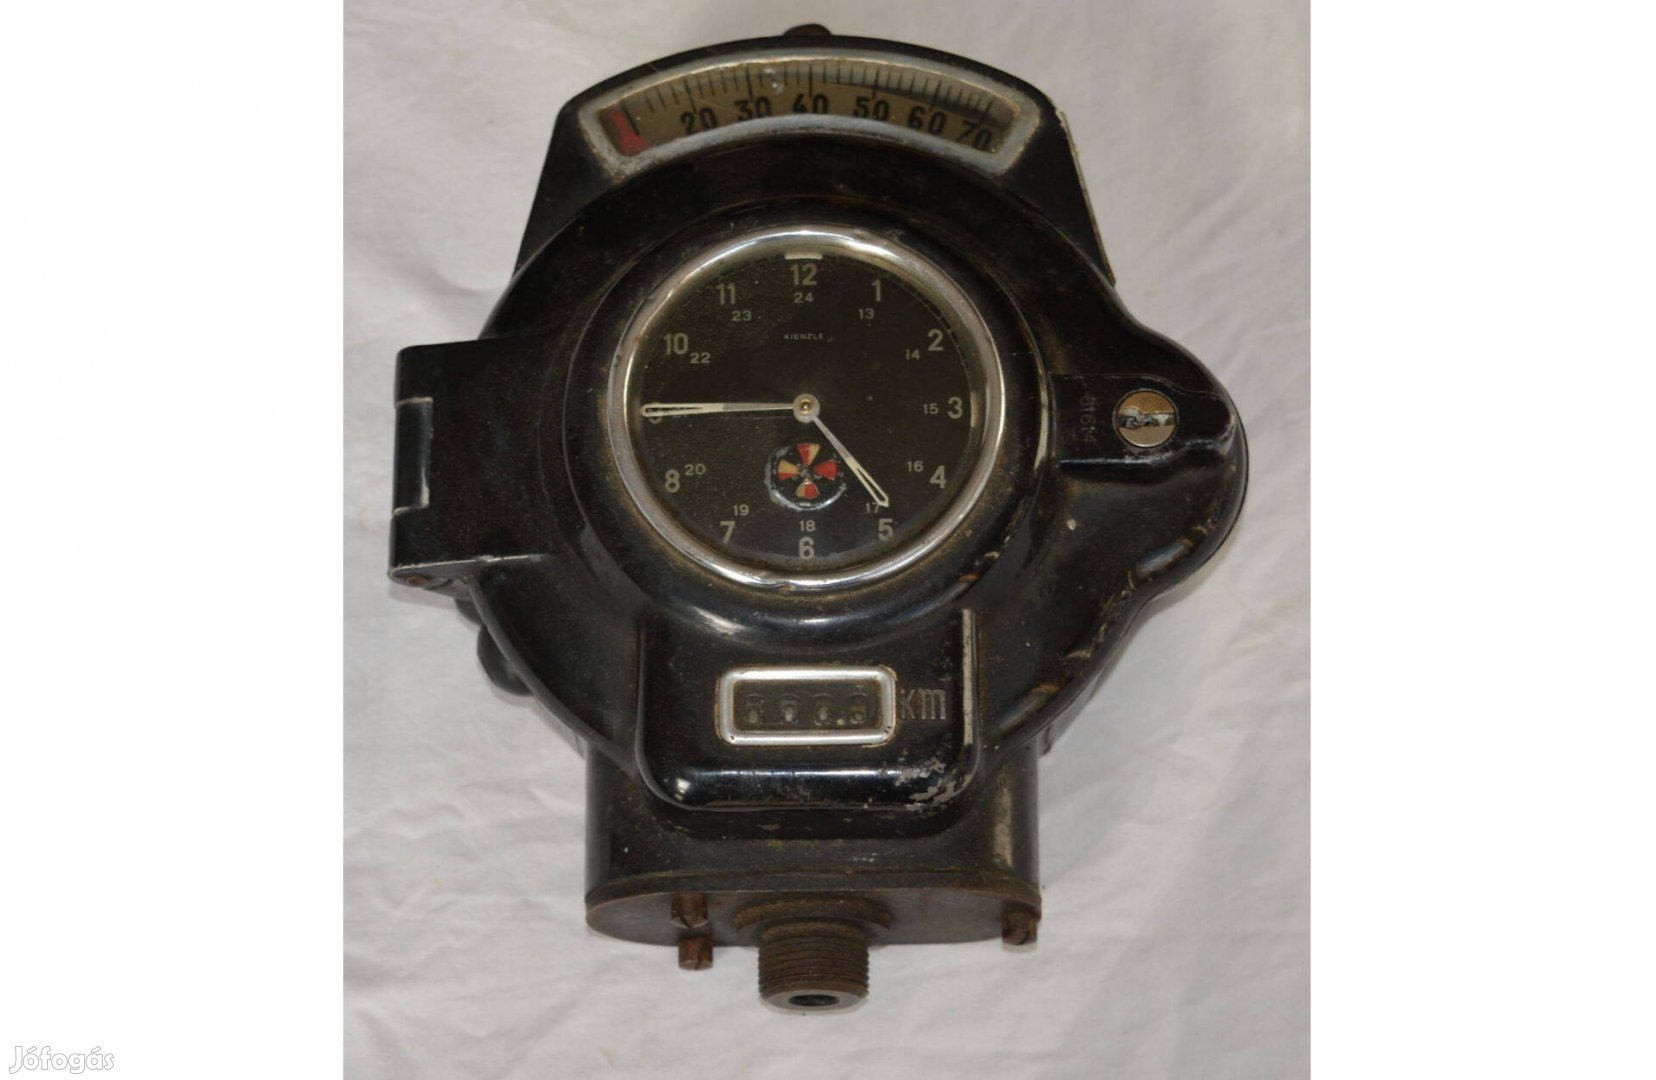 Kienzle TC02 tipusú tachograf 1940-es évek német tachograph